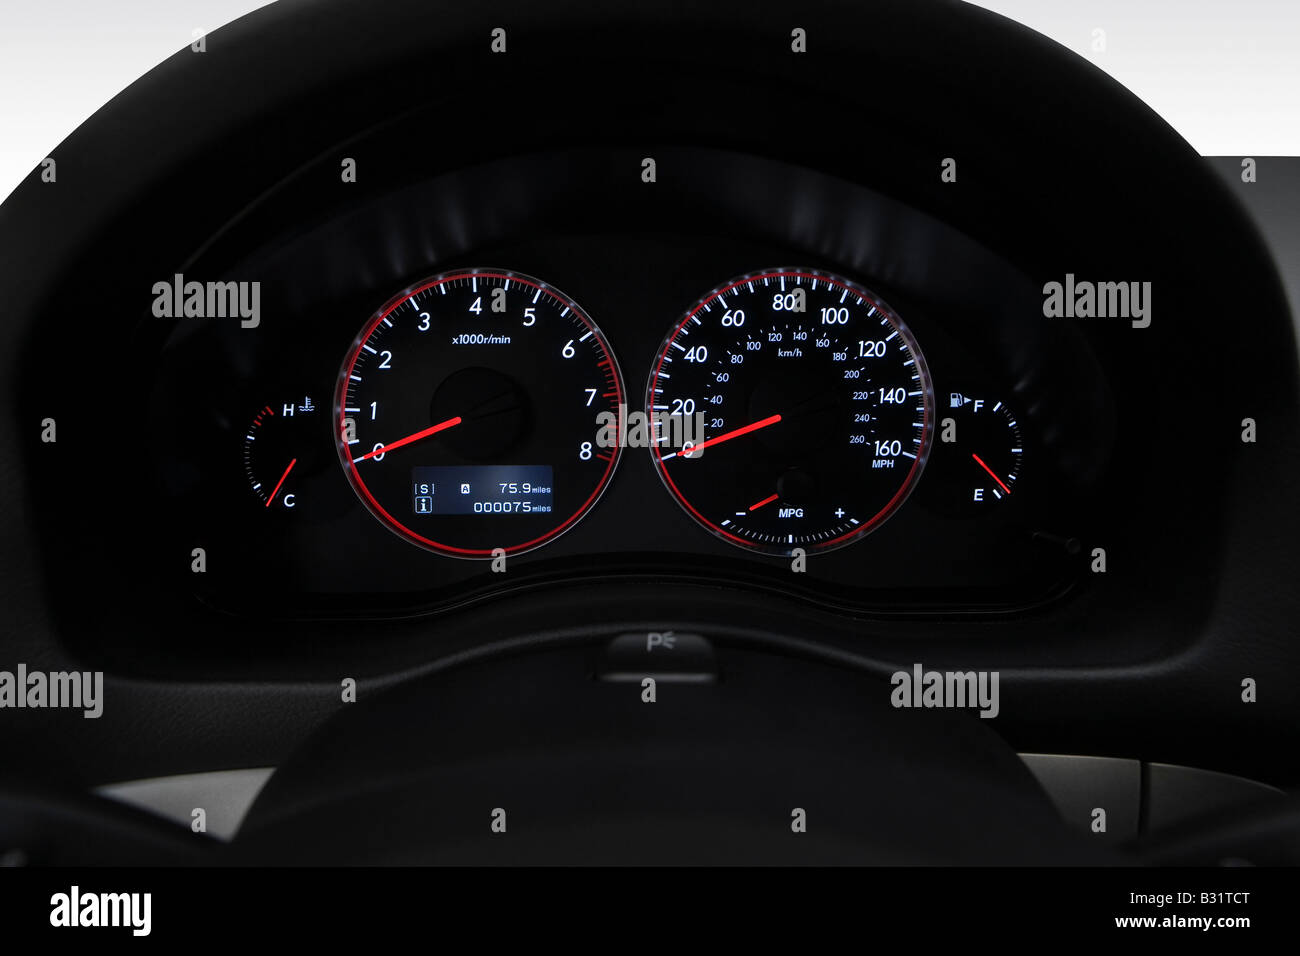 2009 Subaru Legacy 2.5 GT Spec B en noir - Compteur/compte-tours Banque D'Images